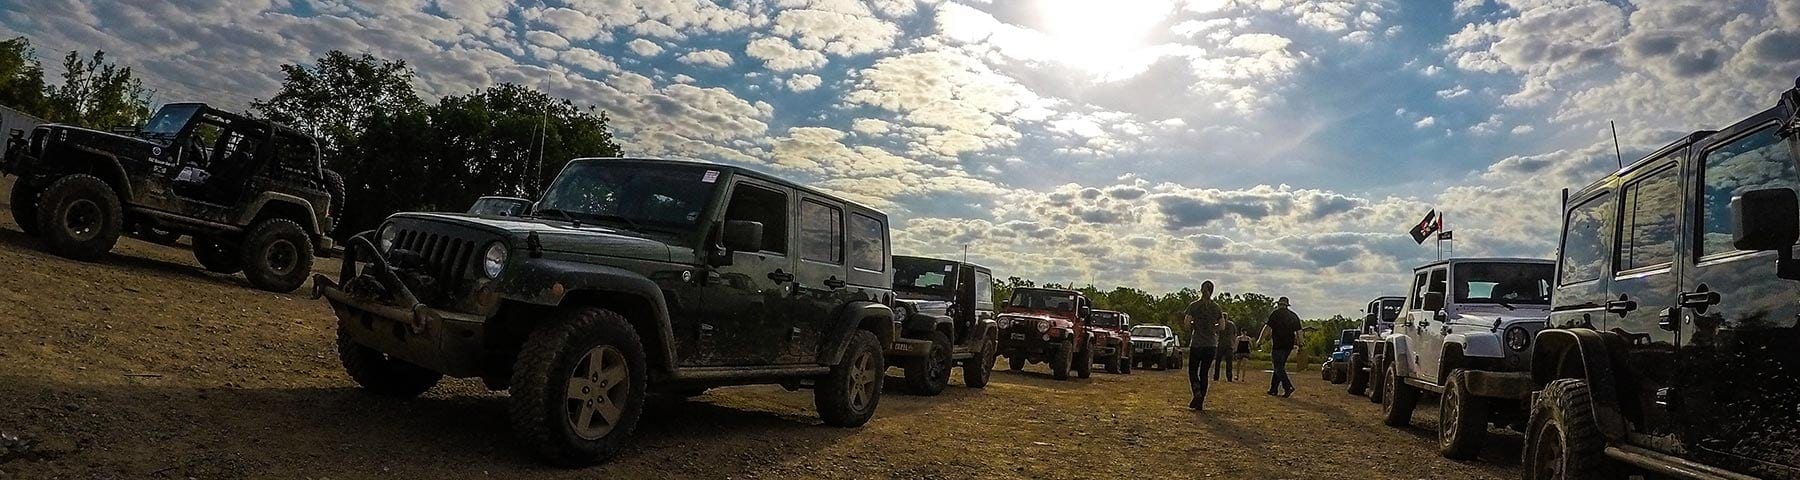 badlands jeep trip